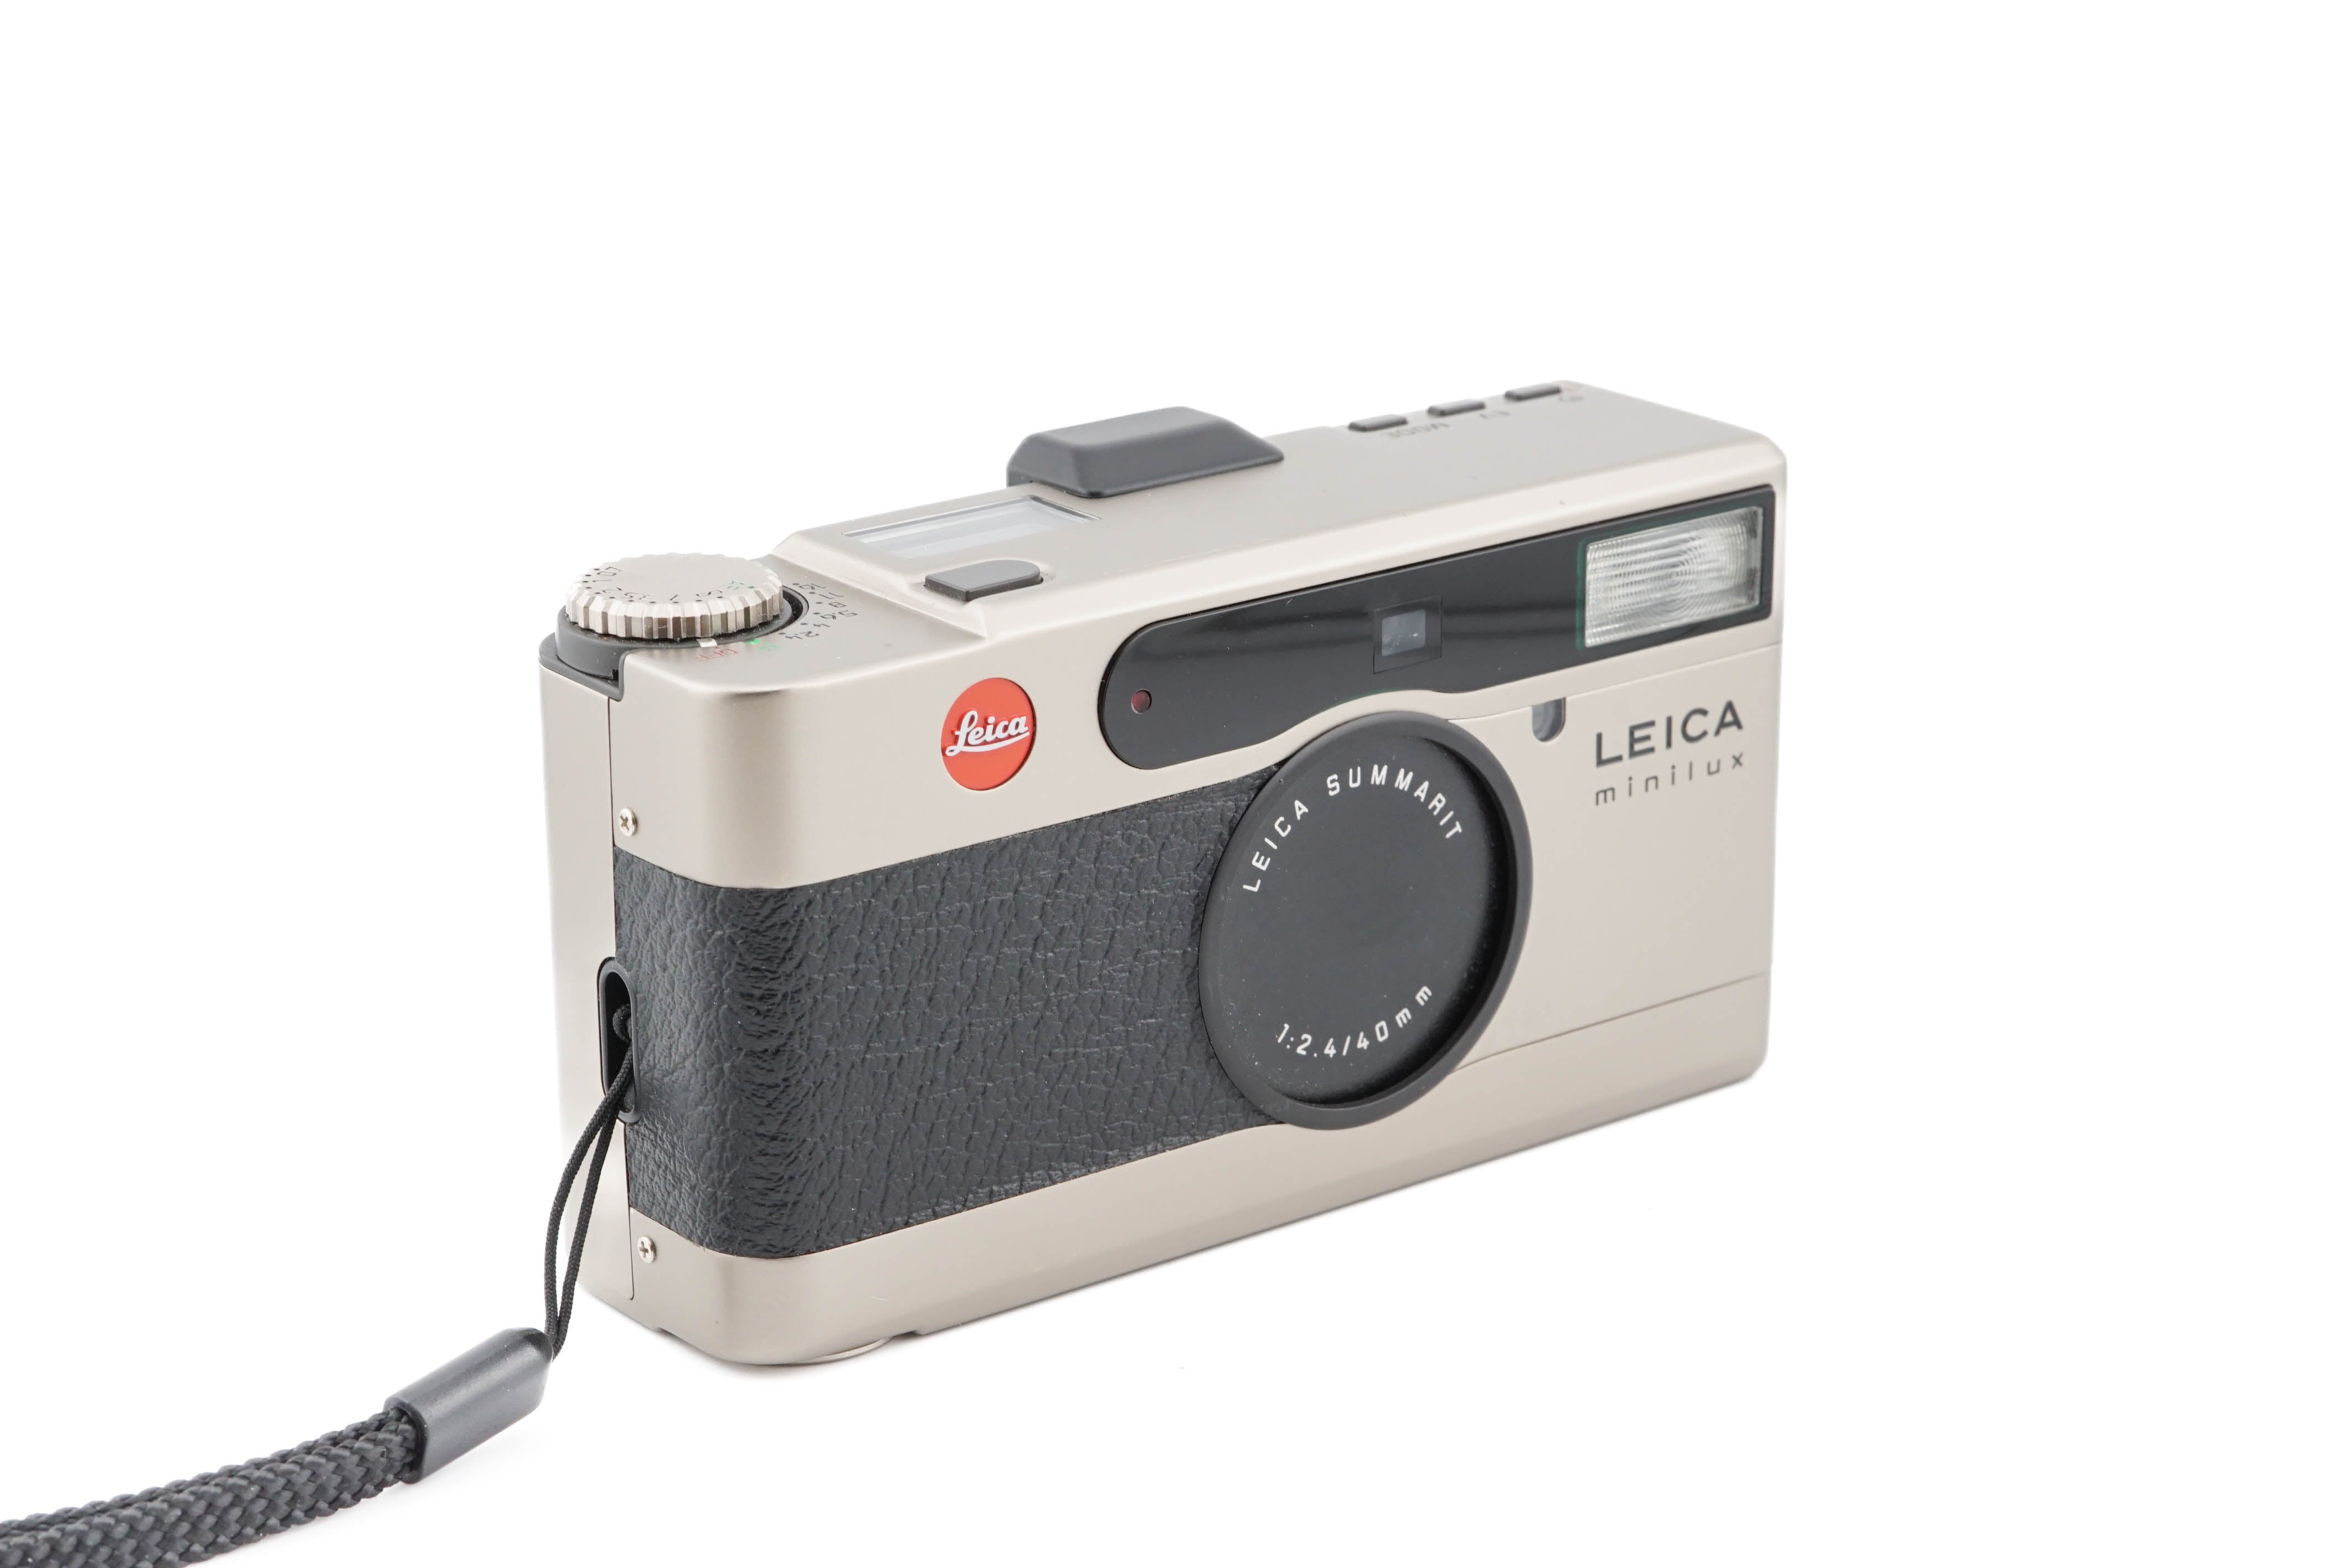 LEICA minilux 18006 GMBH  1:2.4/40mm種類カメラ本体